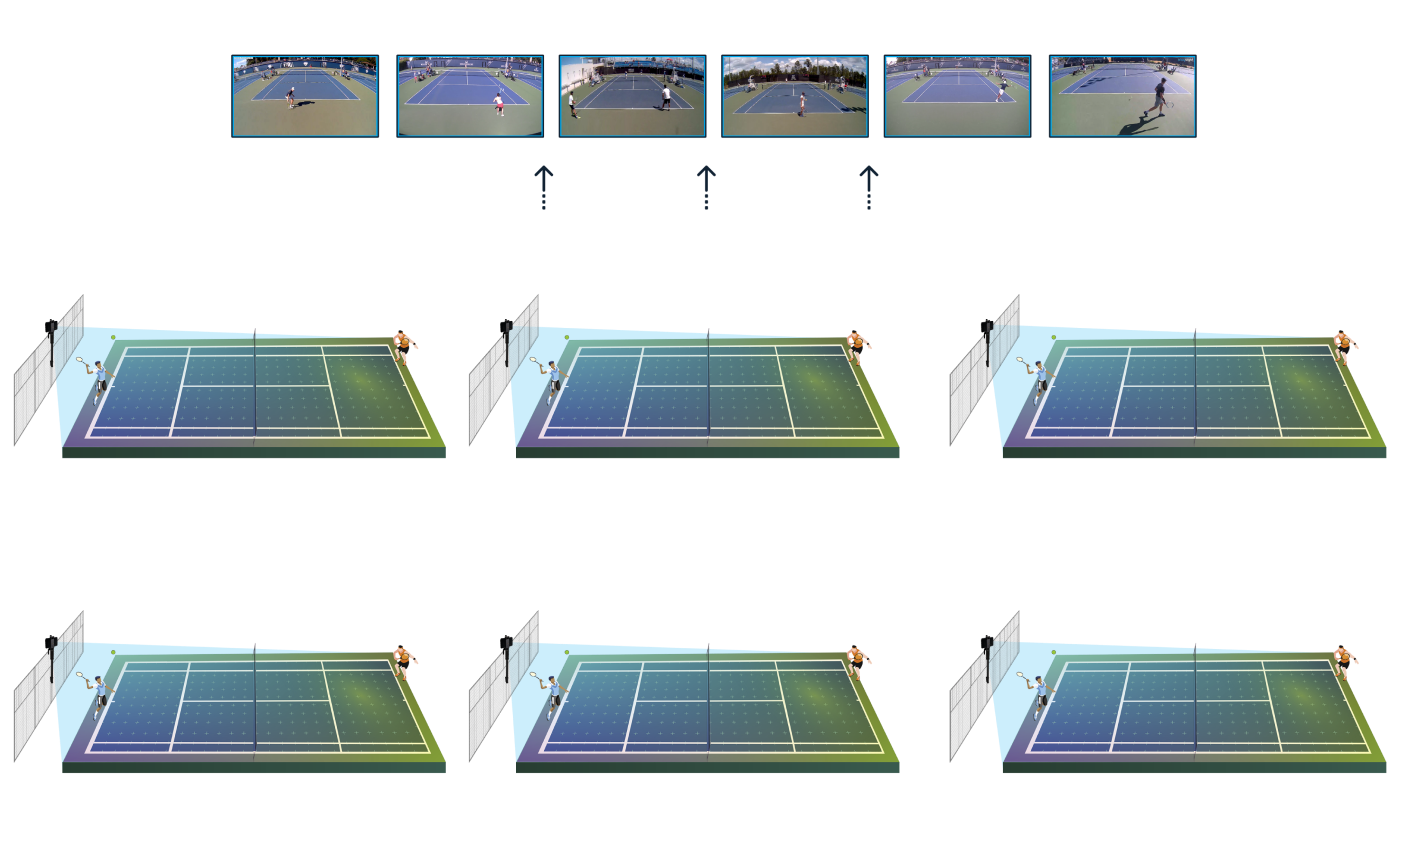 3X3 Go Mobile Tennis Https://Playsight.com